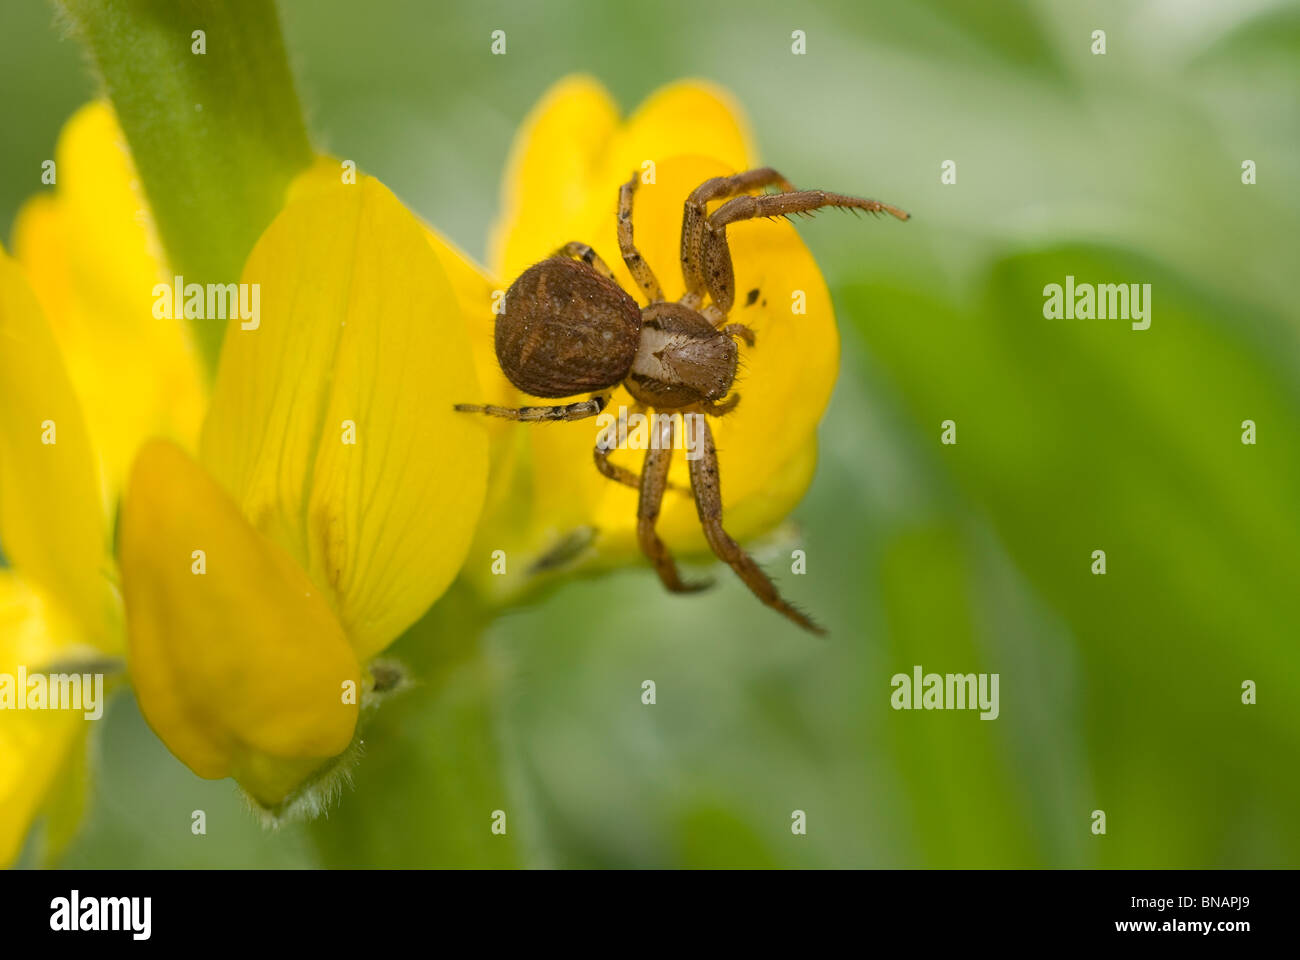 Araignée crabe (Xysticus cristatus) le lupin jaune (Lupinus luteus) fleurs Banque D'Images